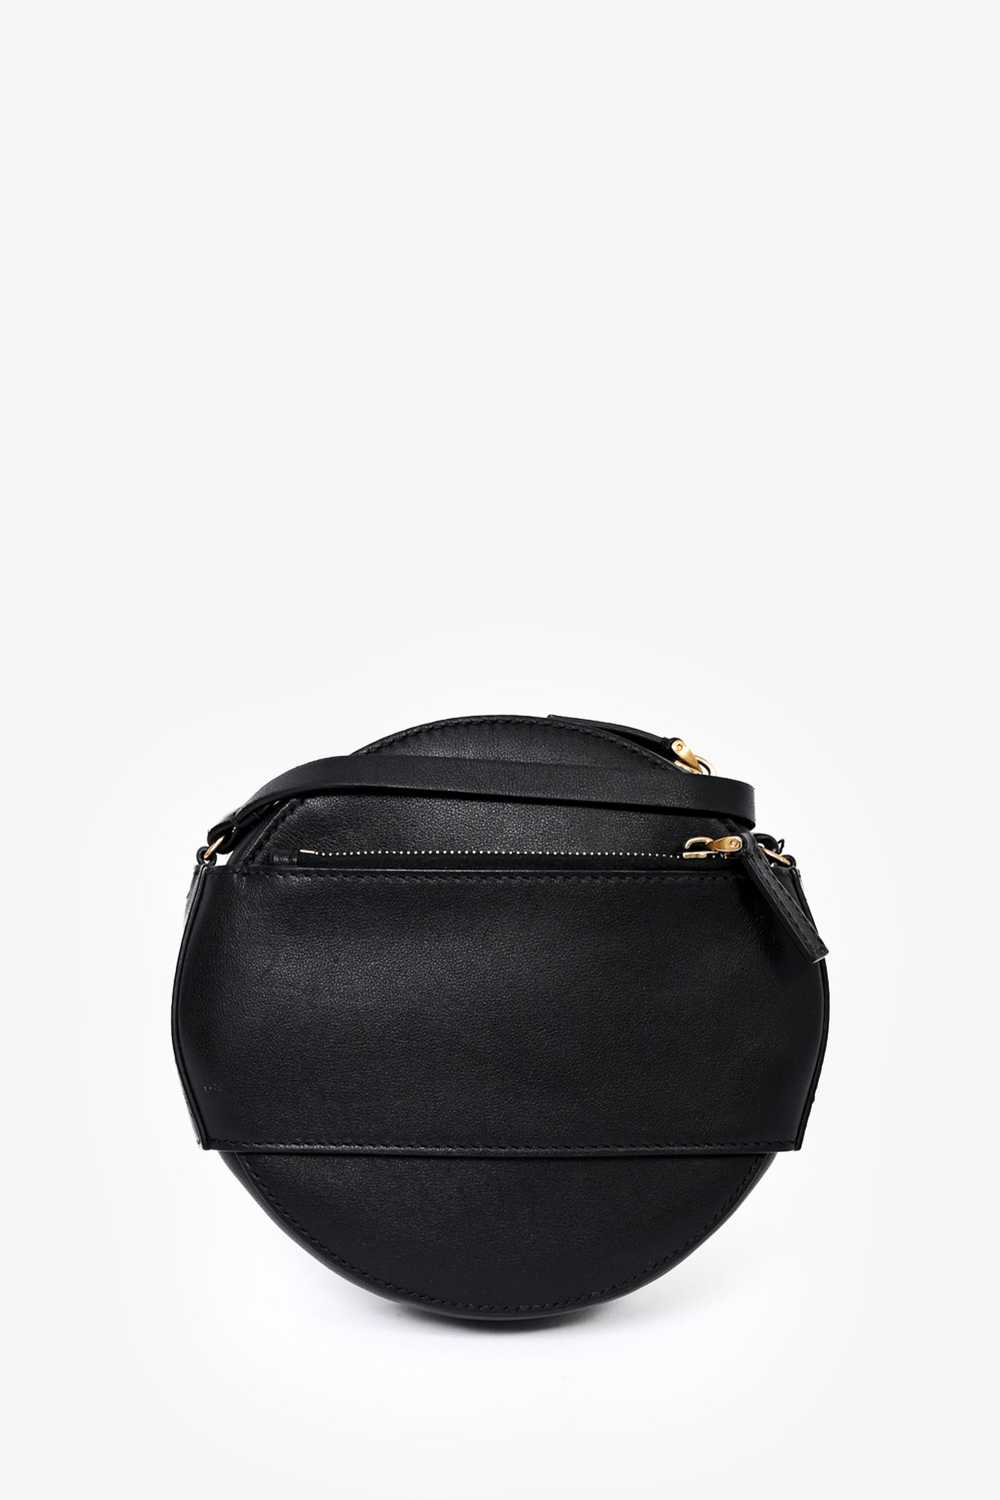 Valentino Black Leather Round V-Logo Crossbody Bag - image 6